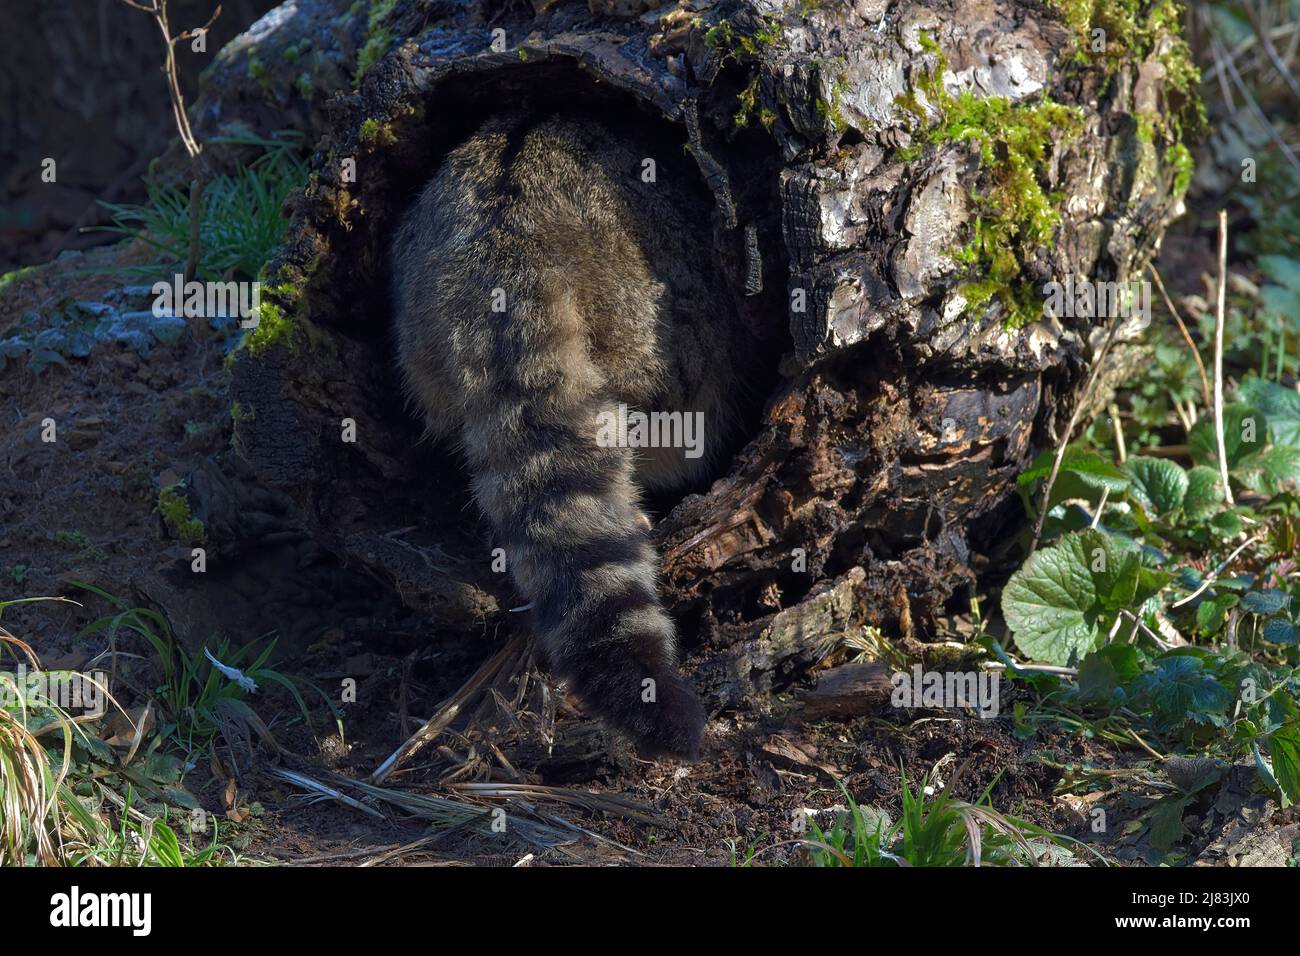 Wildkatze (Felis silvestris) verschwindet in einem hohlen Baum, die charakteristische Schwanzzeichnung ist sichtbar, captive, Tierpark Weilburg Stock Photo